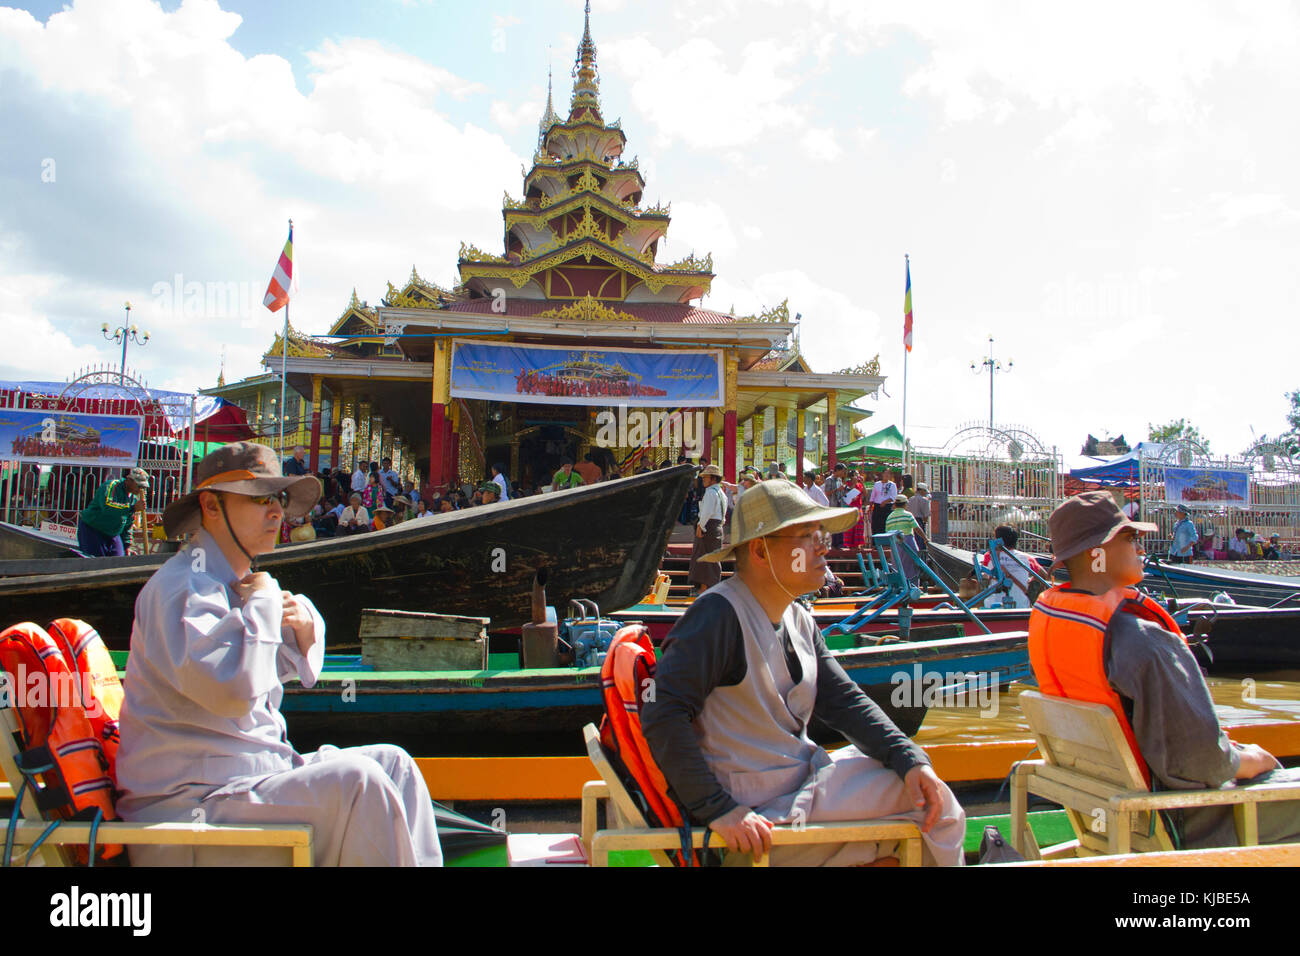 Touristen fahren mit Motorbooten in der Nähe von Phaung Daw oo Pagode auf dem Inle See in Myanmar Inle See ist eine wichtige touristische Attraktion im Shan Staat. Stockfoto